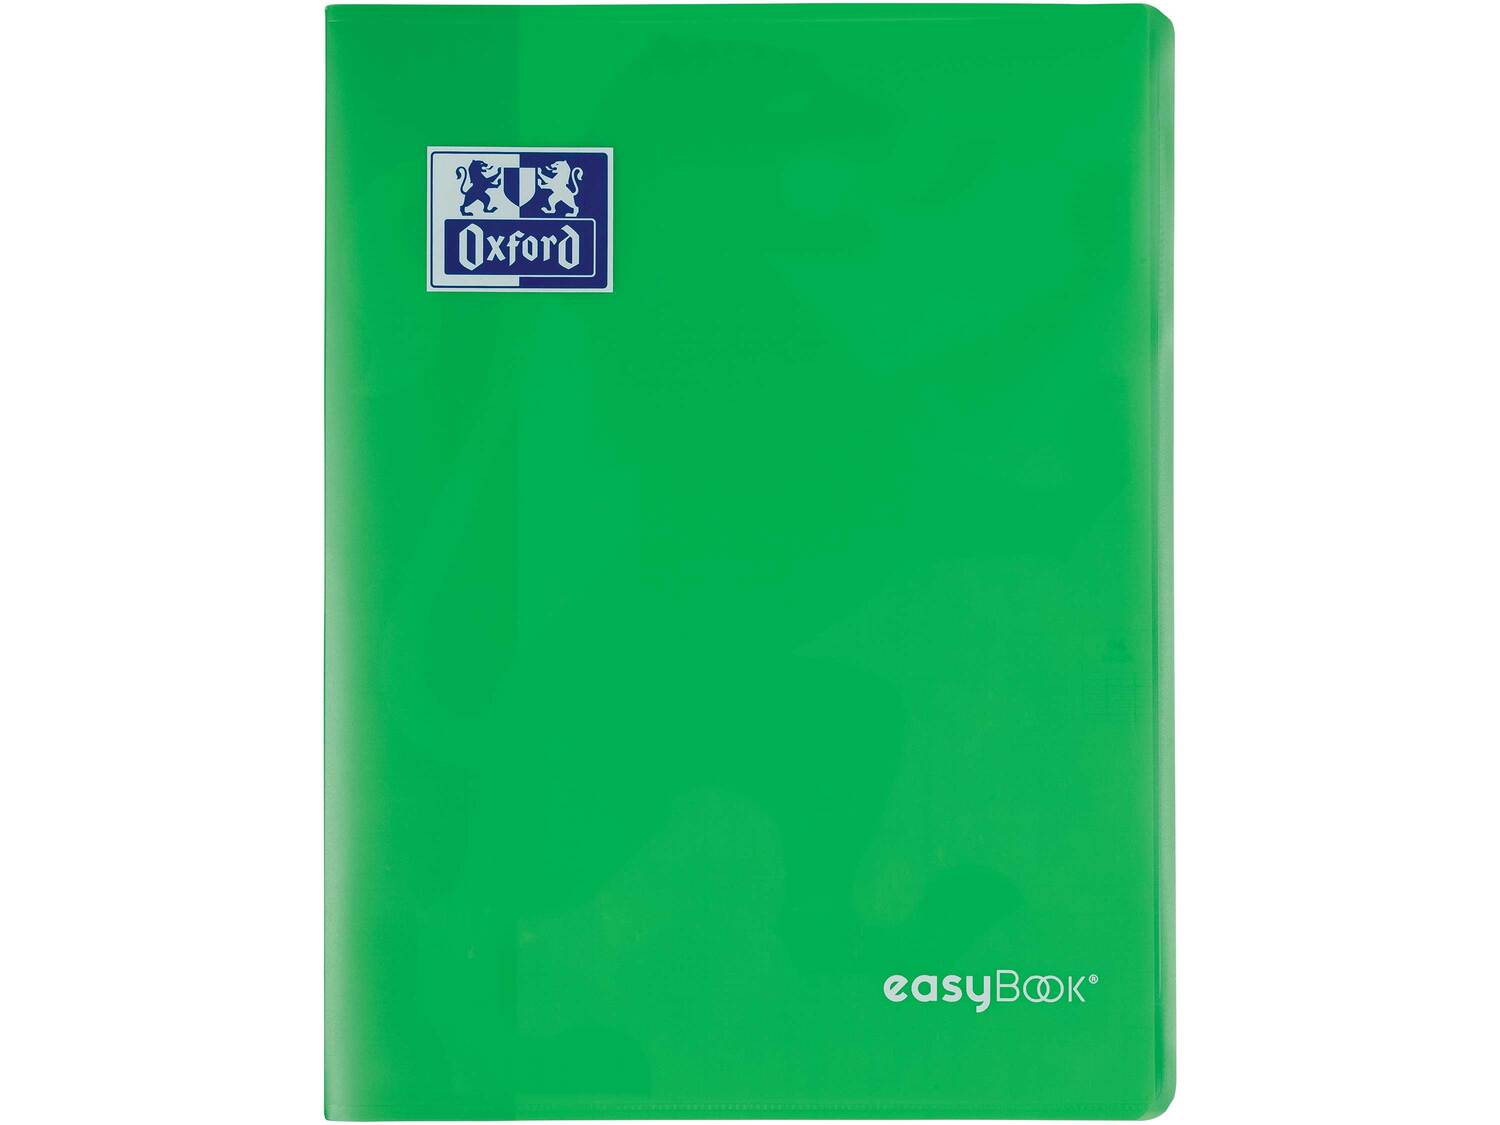 Cahier Easybook , le prix 2.49 &#8364;  
-  24 x 32 cm
-  96 pages